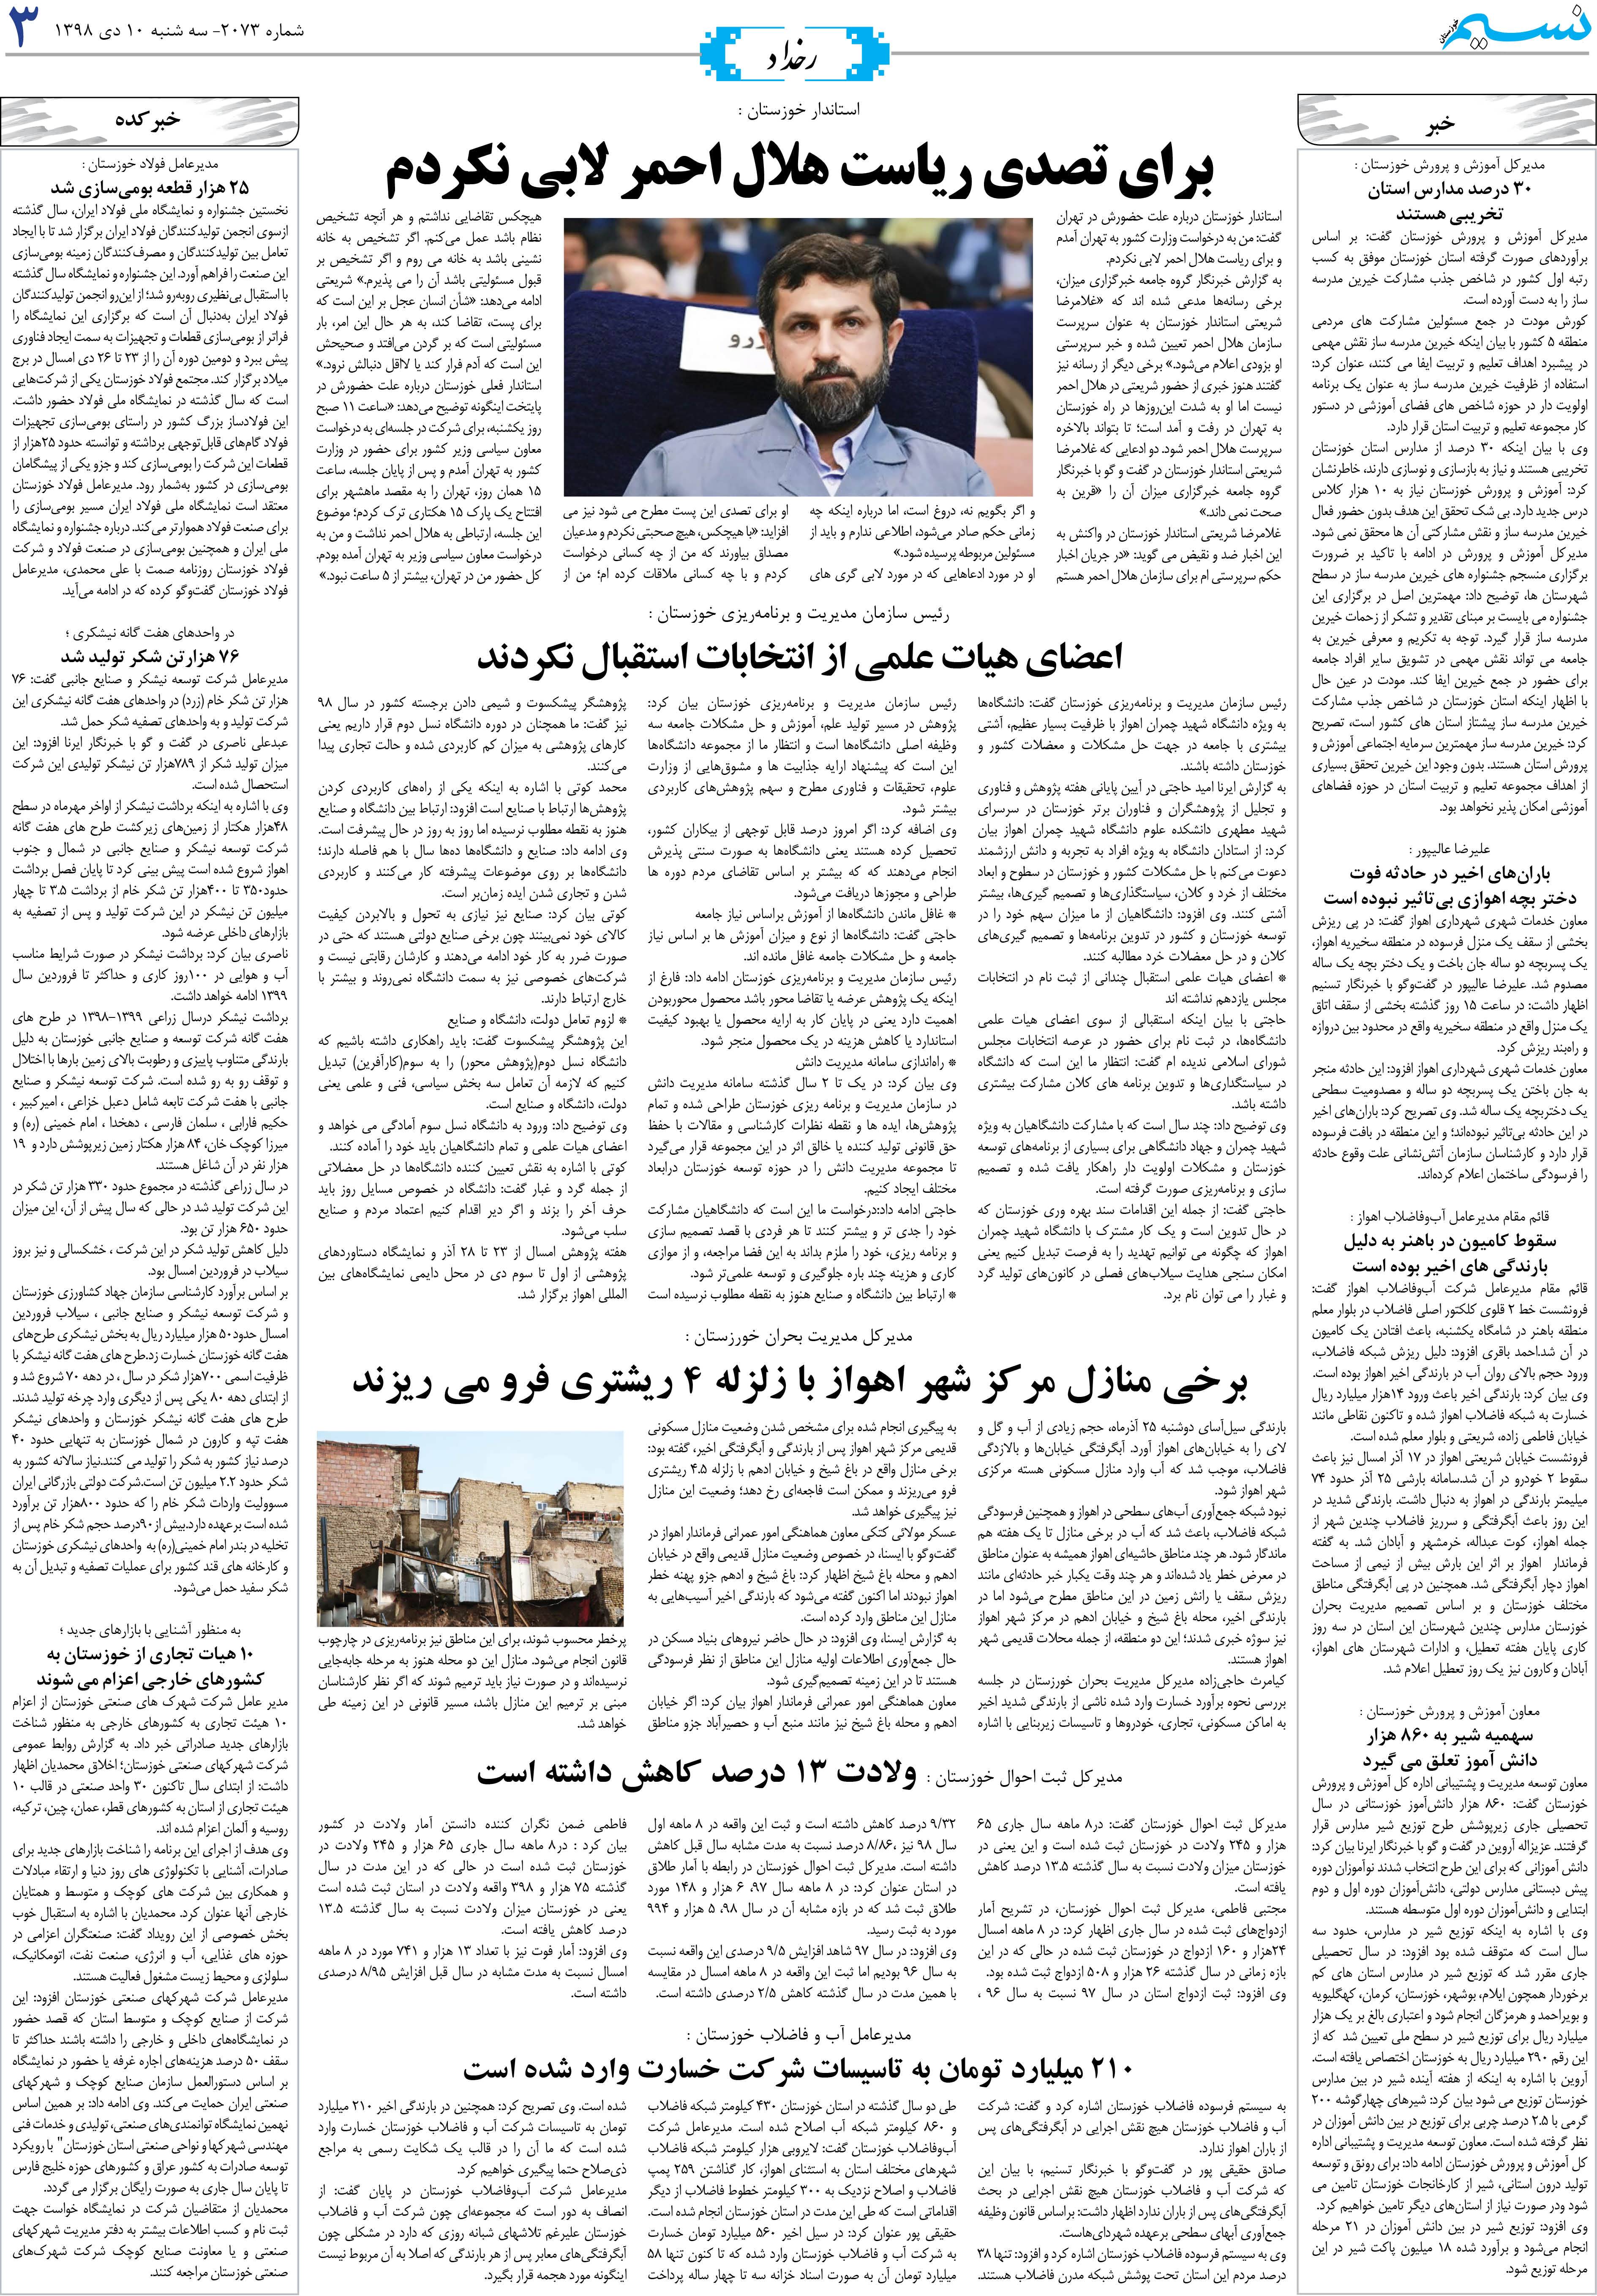 صفحه رخداد روزنامه نسیم شماره 2073